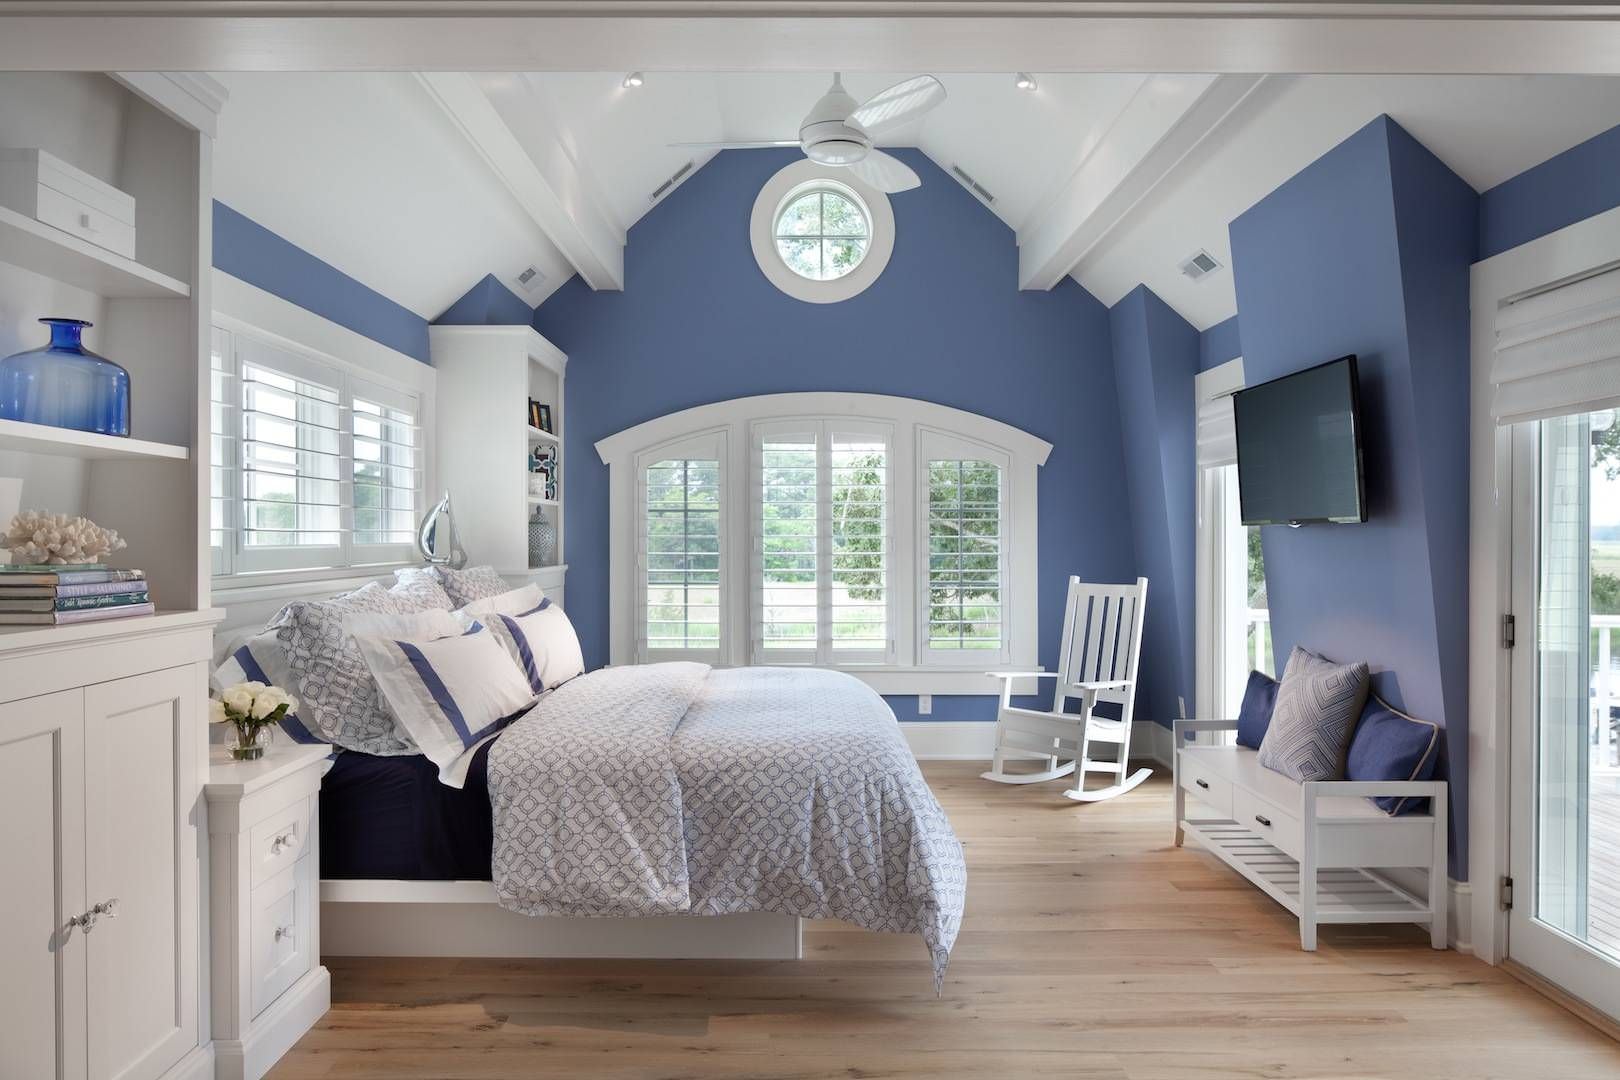 Trang trí tường và trần nhà bằng 2 gam trắng xanh làm chủ đạo